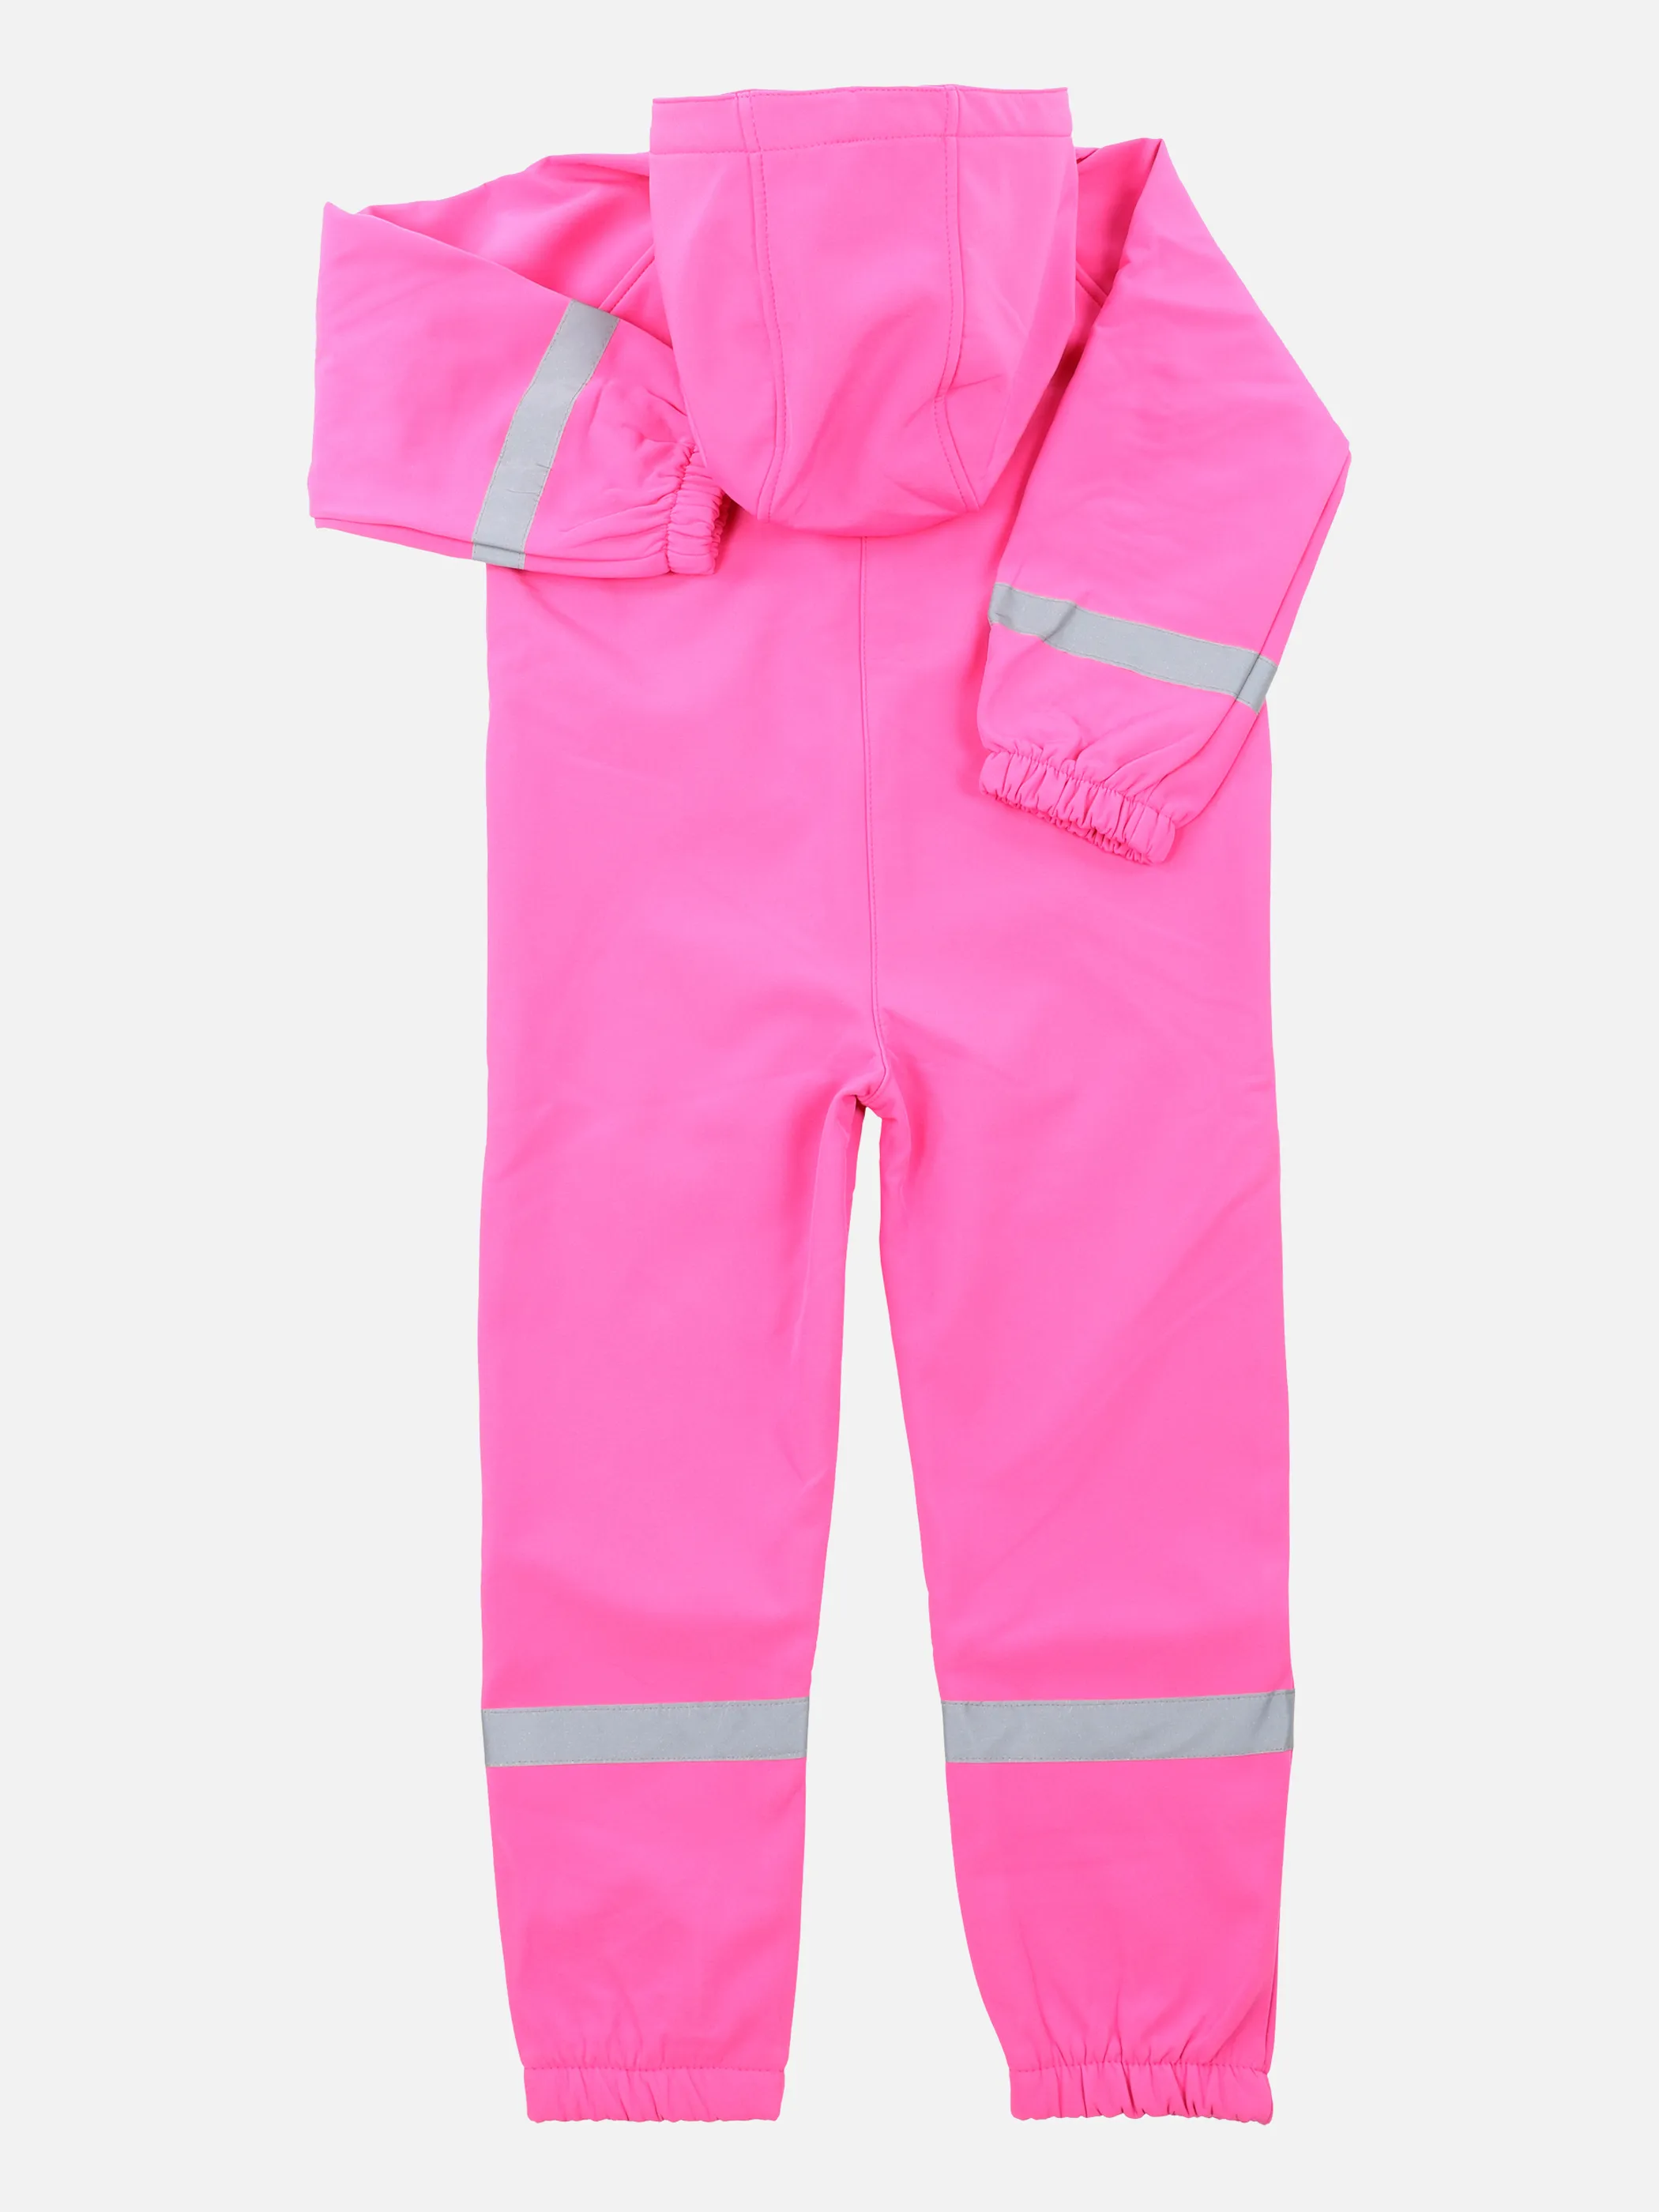 Kinder Regenoverall mit Kapuze | PINK noSize | 862272-pink 